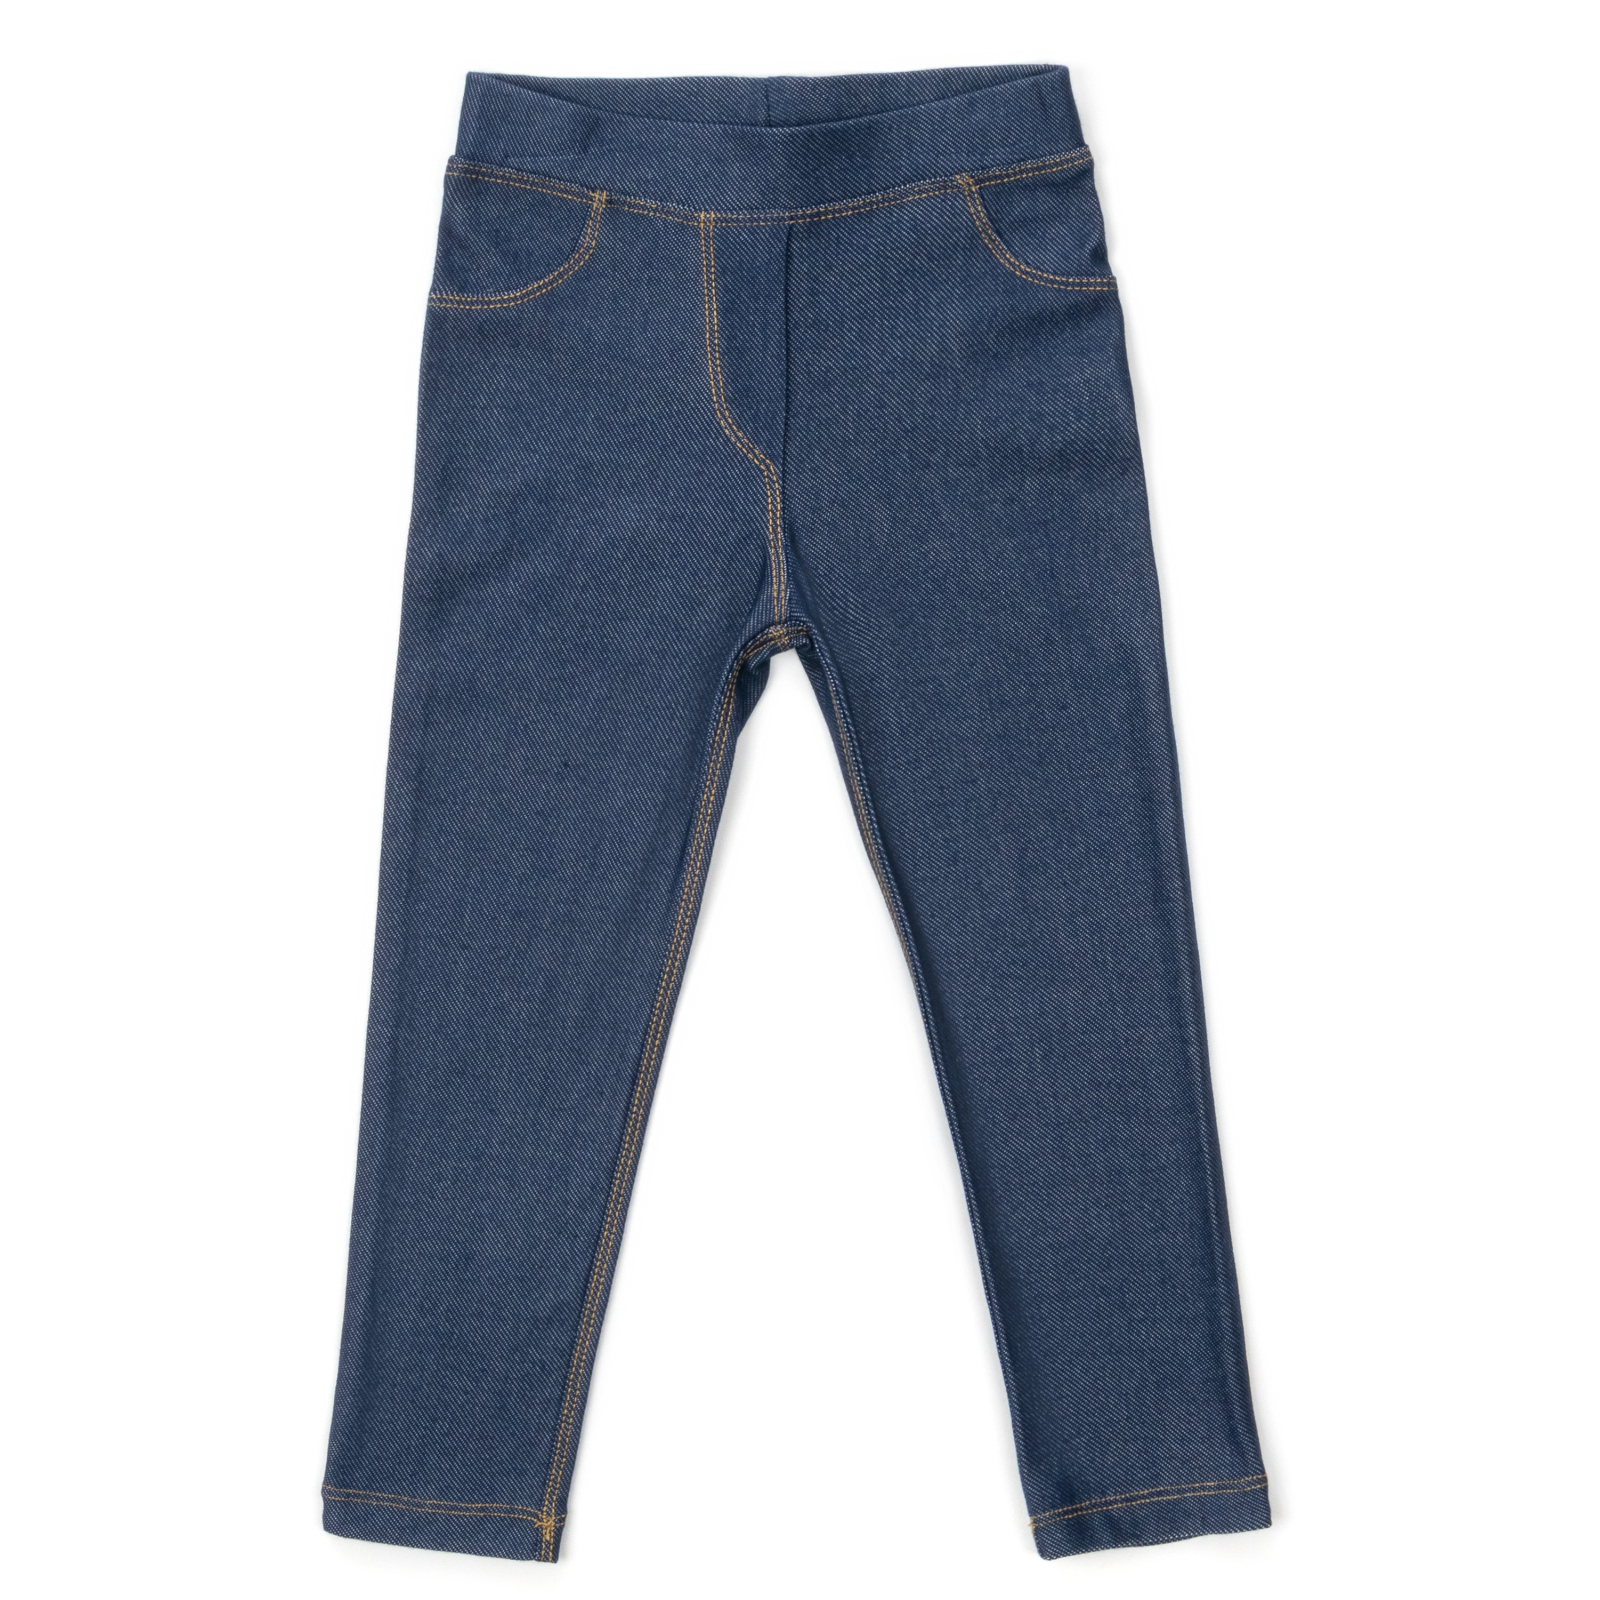 Лосини Breeze трикотажні (4415-116G-jeans)